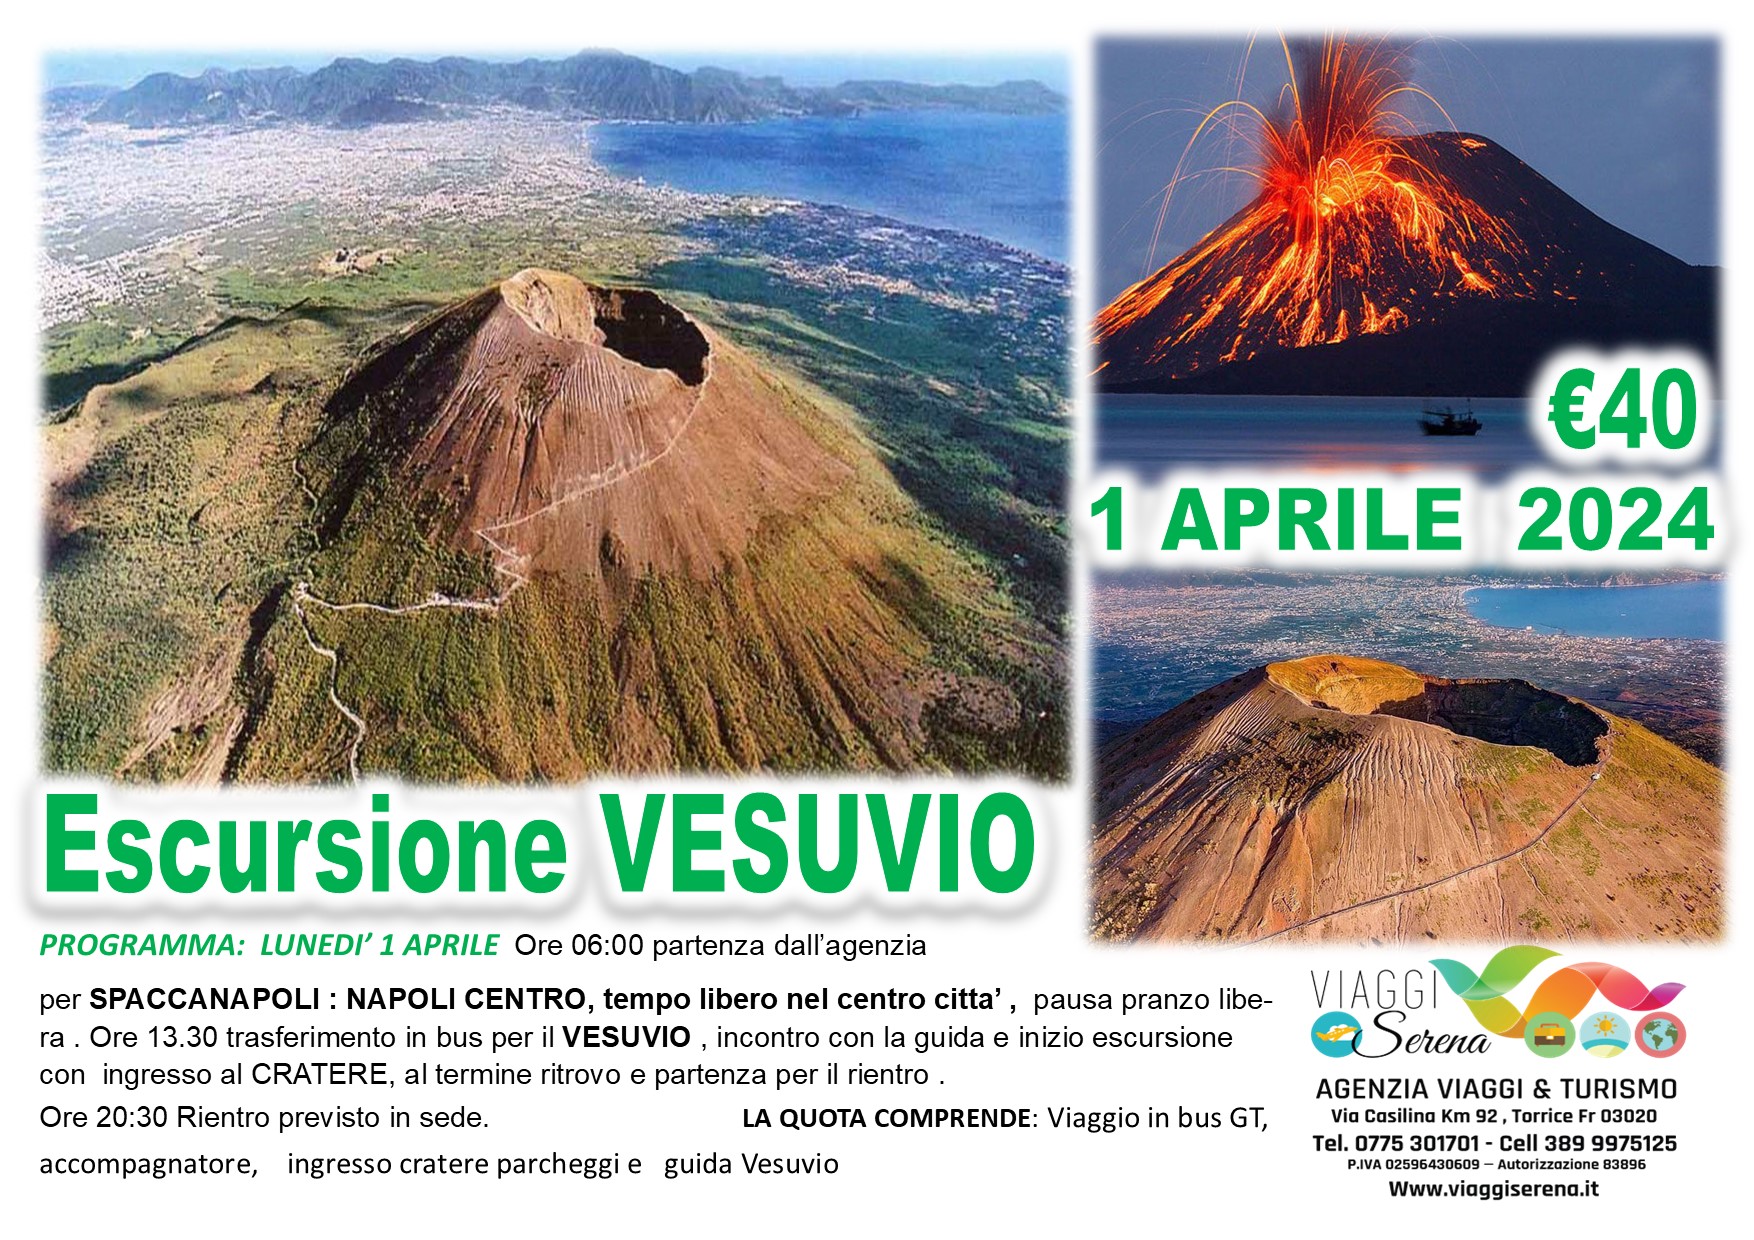 Viaggi di gruppo: Escursione Sul Vesuvio e Napoli centro 1 Aprile  €40,00